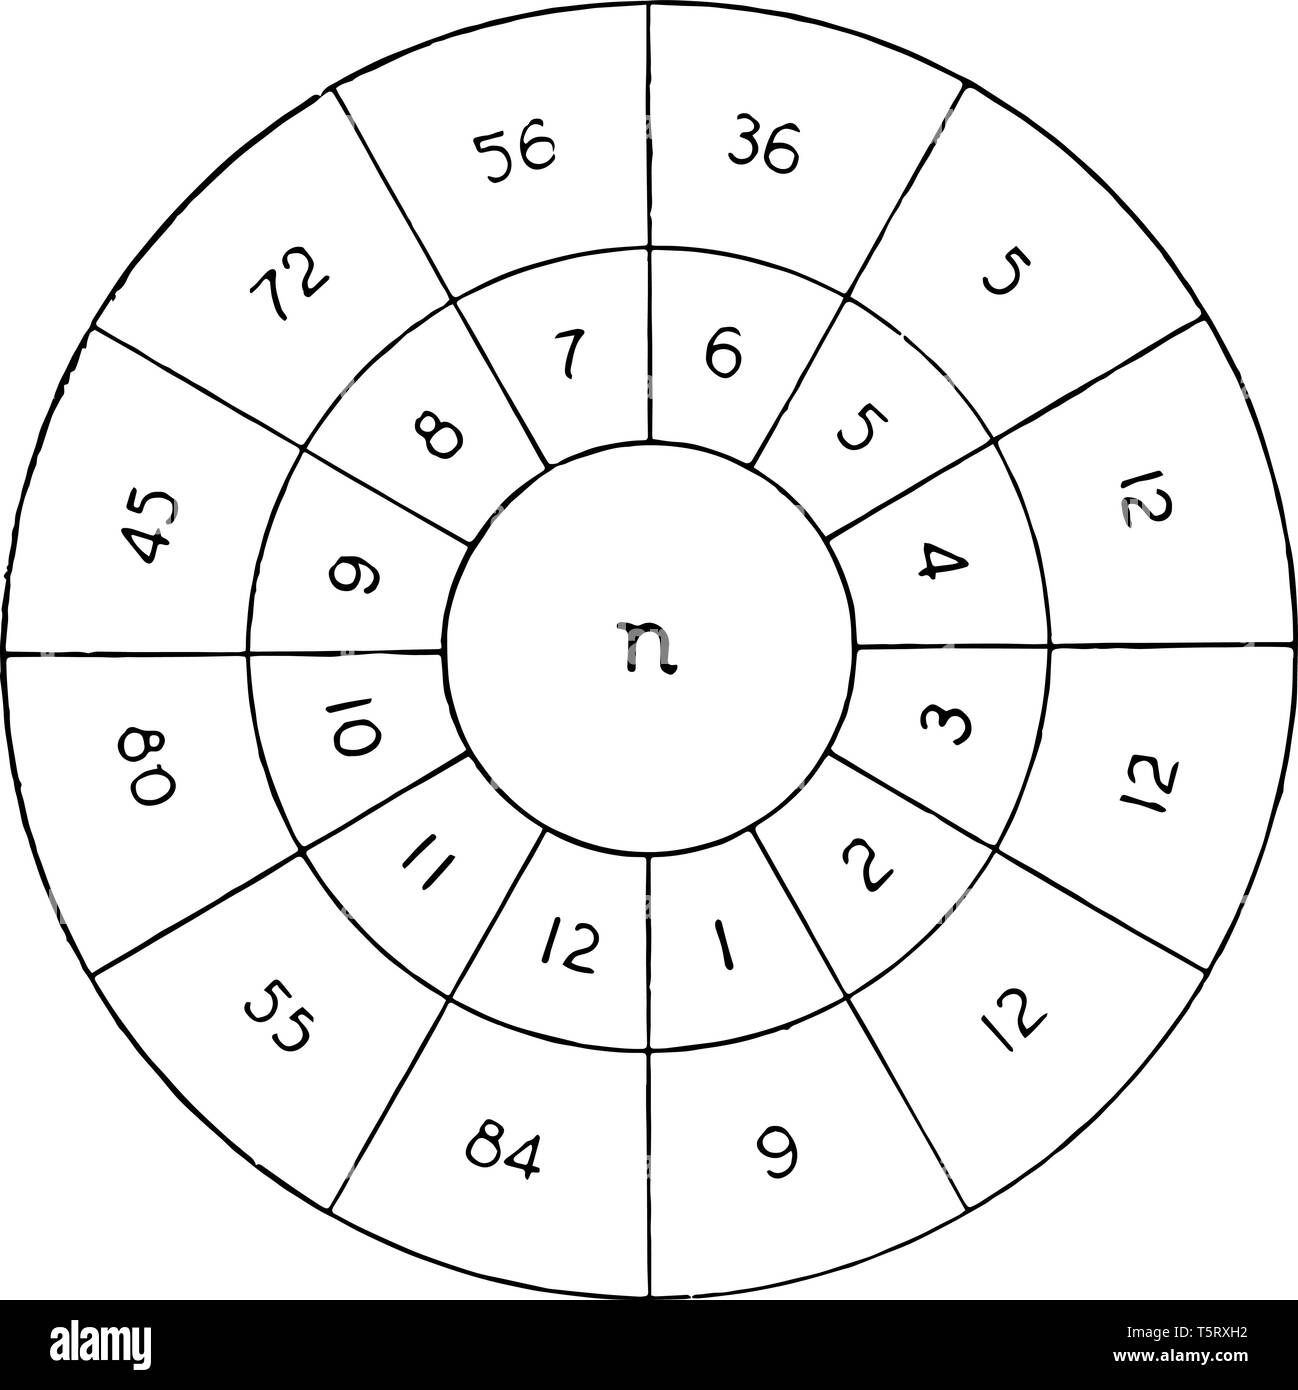 Una illustrazione di anello che include i numeri multipli di essa; può essere utilizzato per mettere in pratica per le tabelle. Il n rappresentano il fattore ordine, anello interno sono Illustrazione Vettoriale